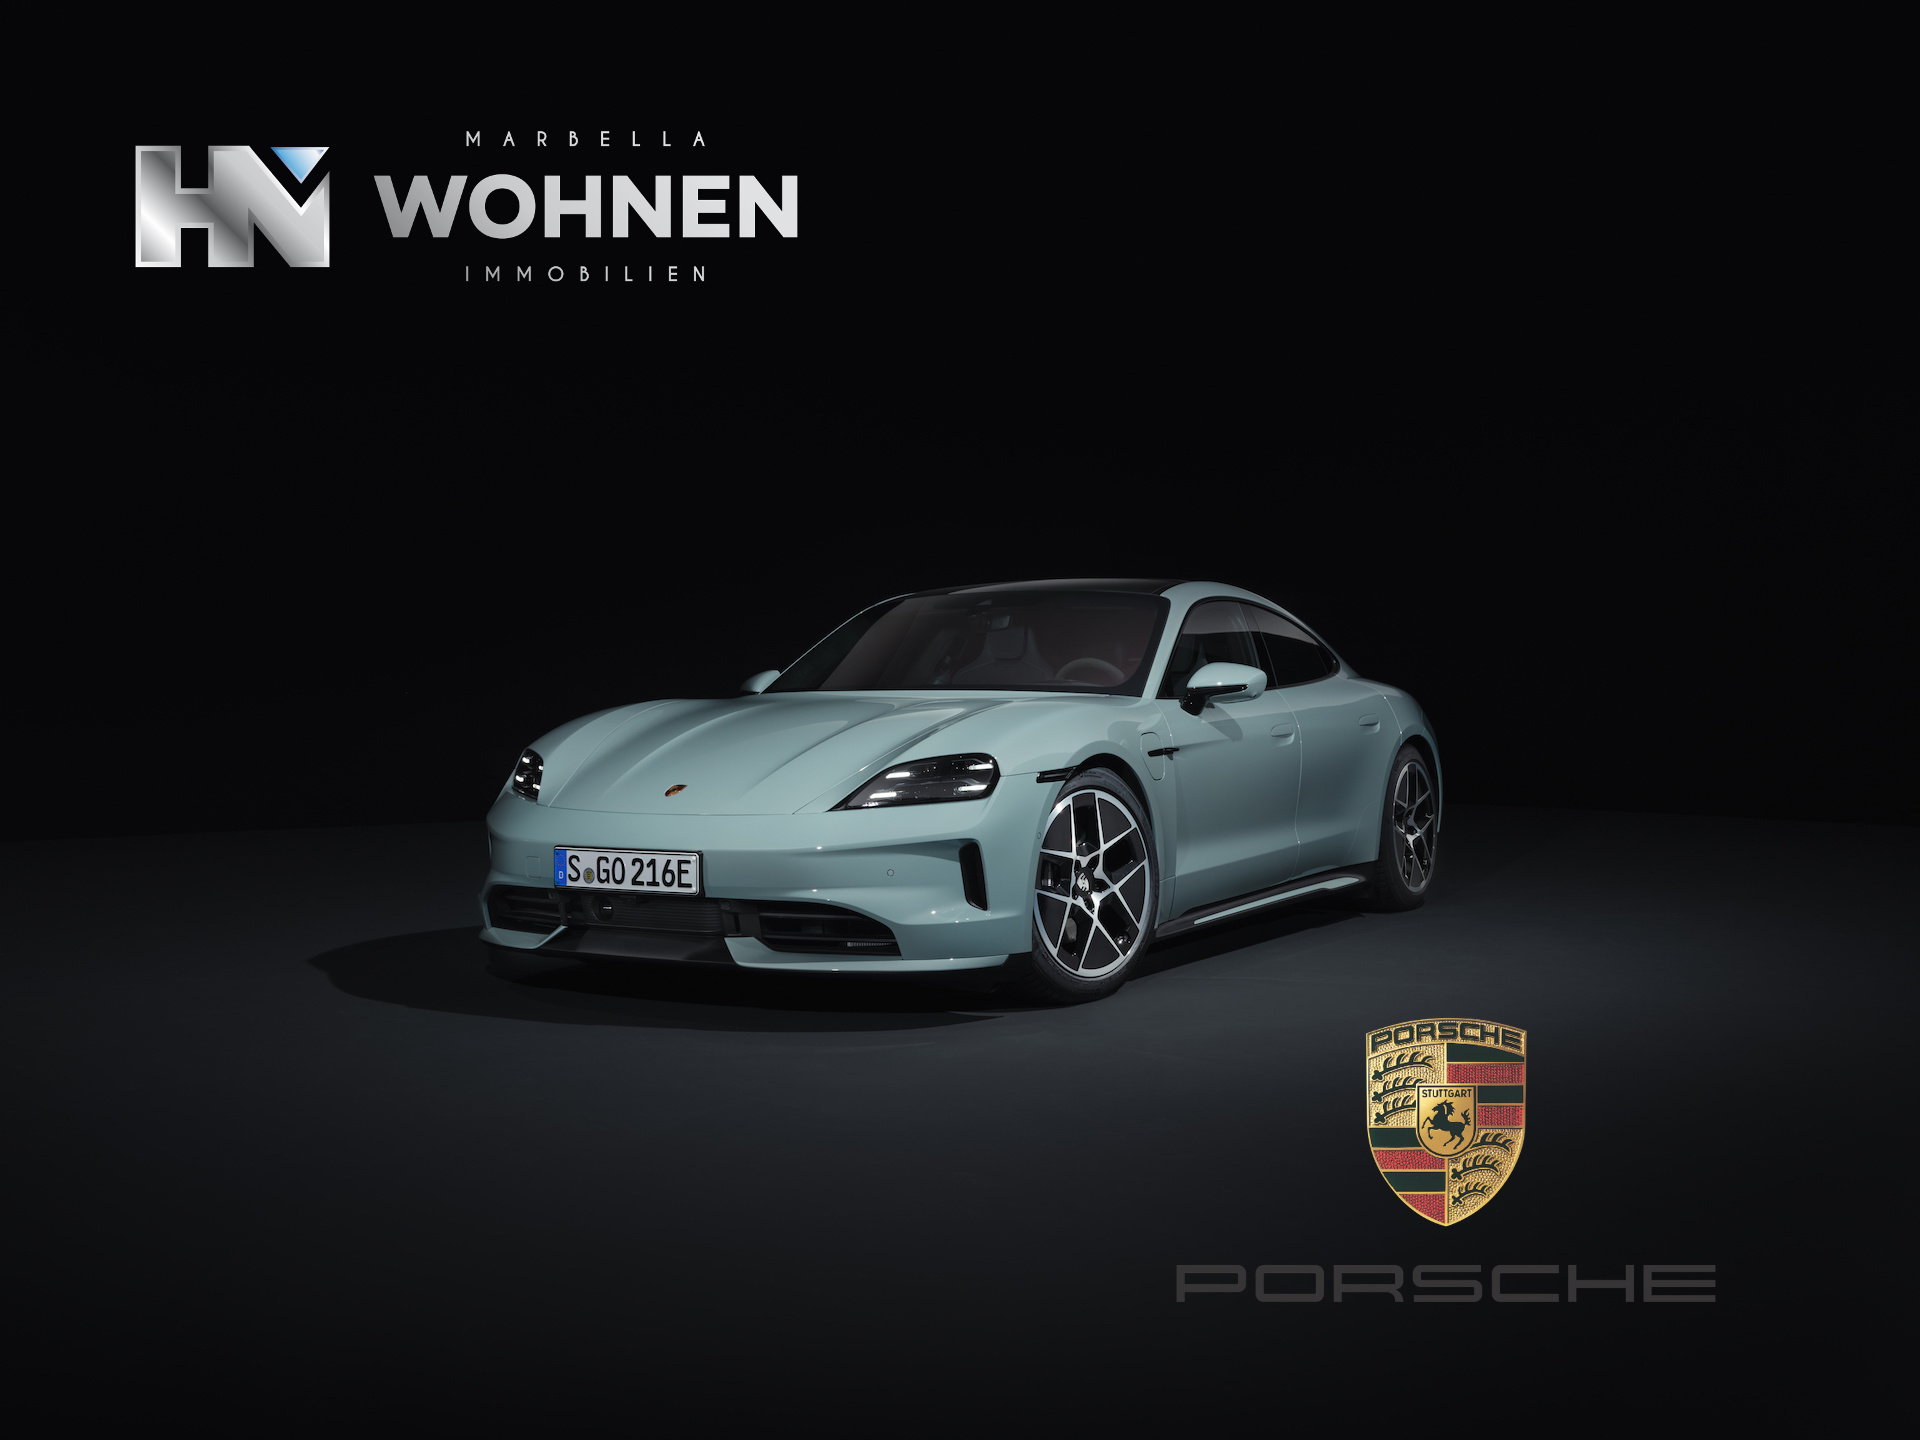 REAL ESTATE – MARBELLA WOHNEN – EVENT – LIFESTYLE – Porsche Center Marbella presents the new Porsche Taycan Eléctro